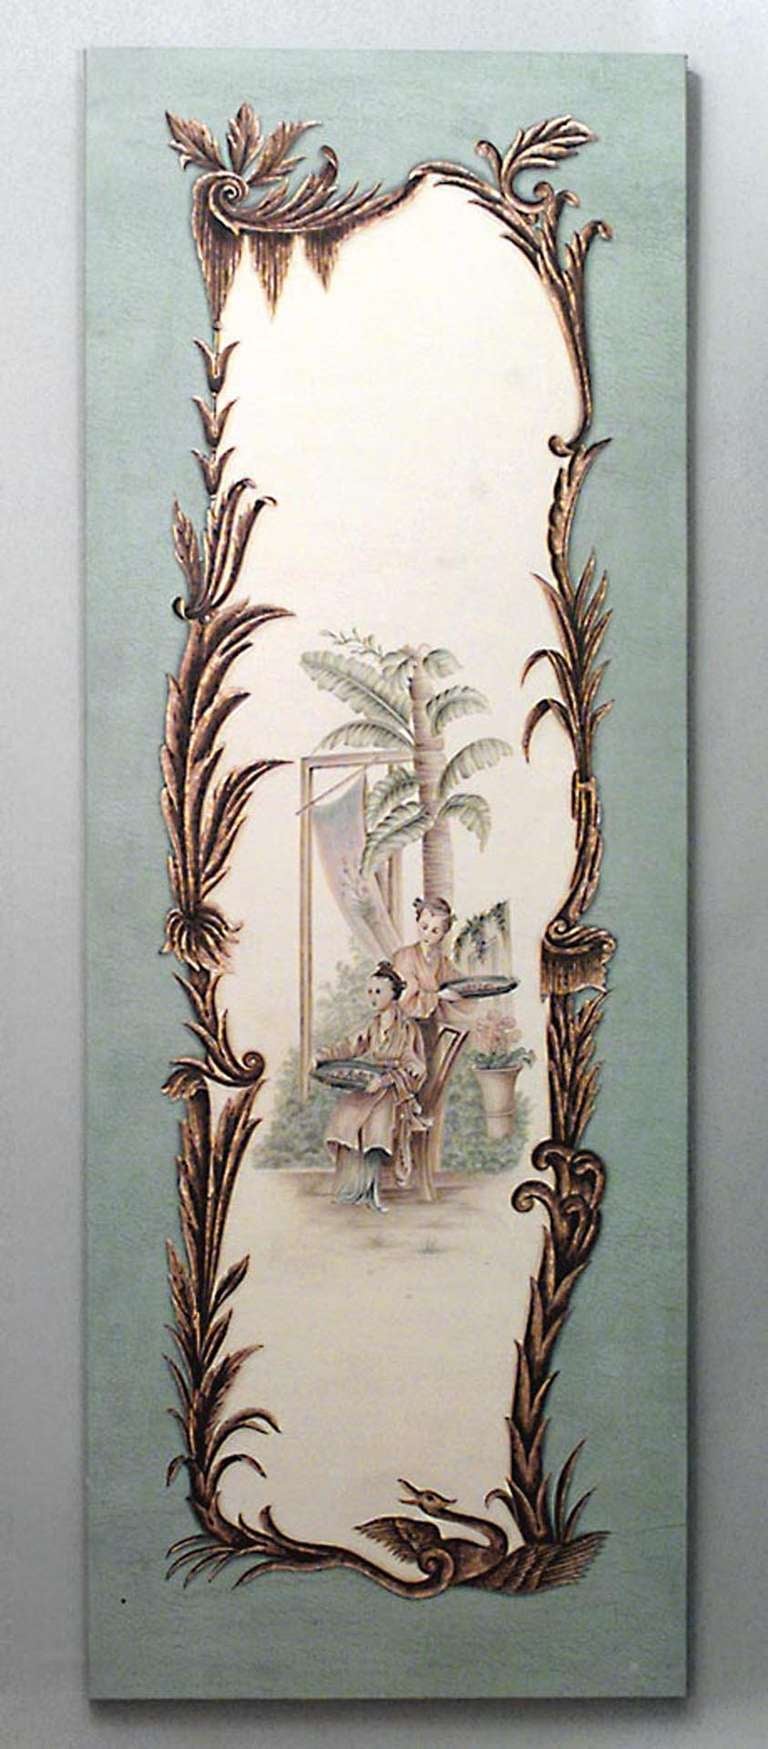 Paire de tableaux à pilastre de style Louis XV du XXe siècle, à l'huile sur toile céladon, représentant des scènes de genre chinoises dans le style de Jean Pillement.